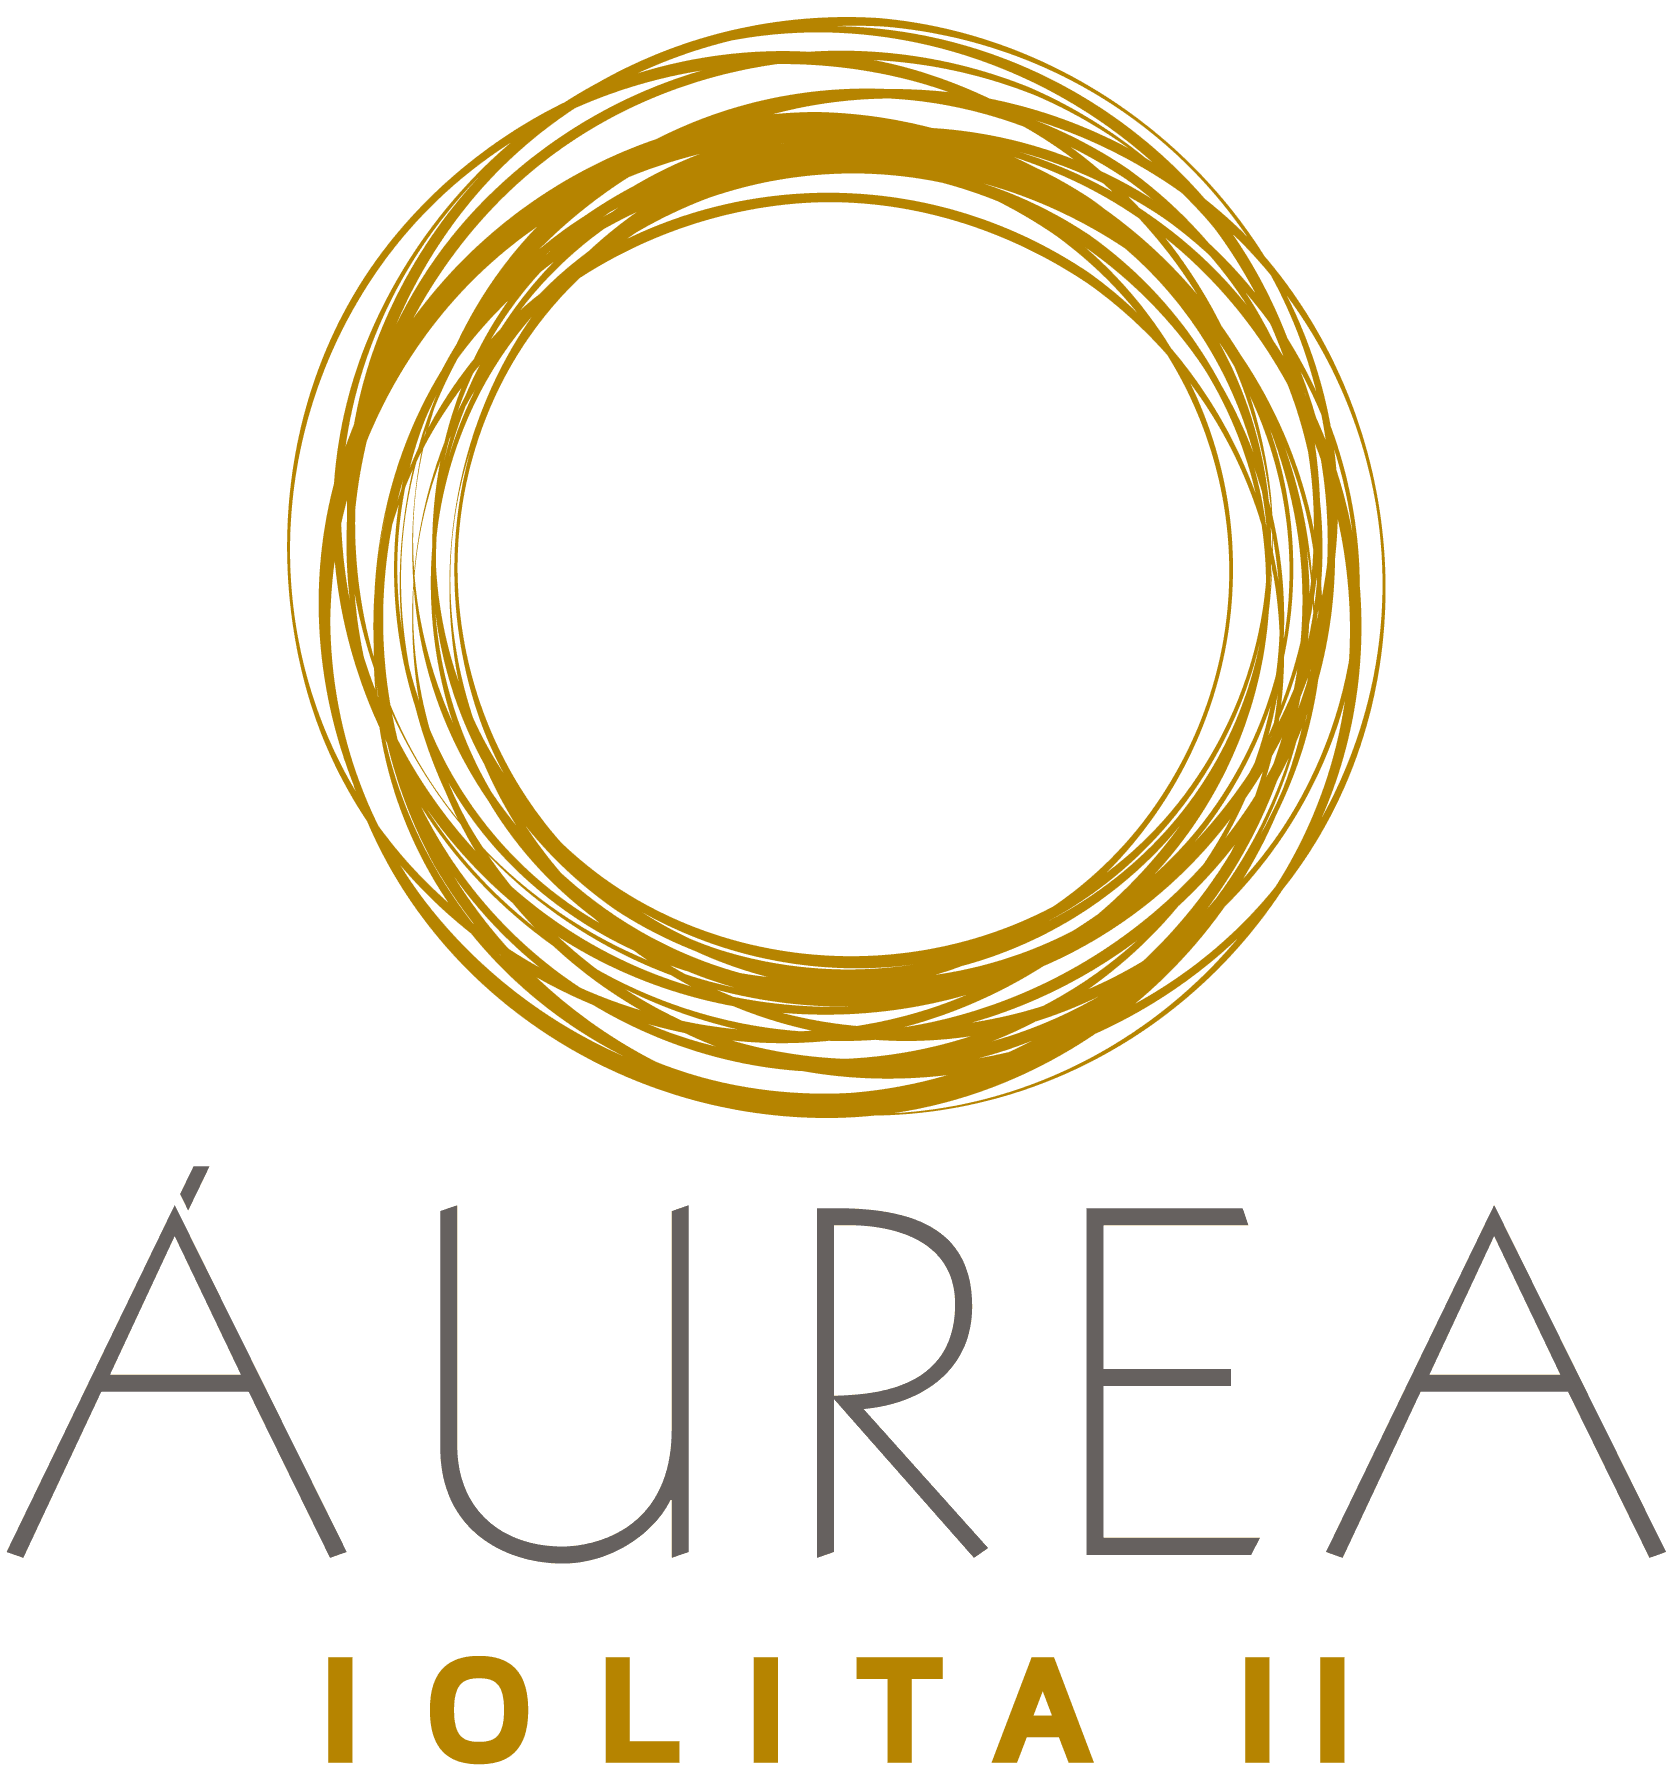 QRO Aurea iolita II logo-01.png